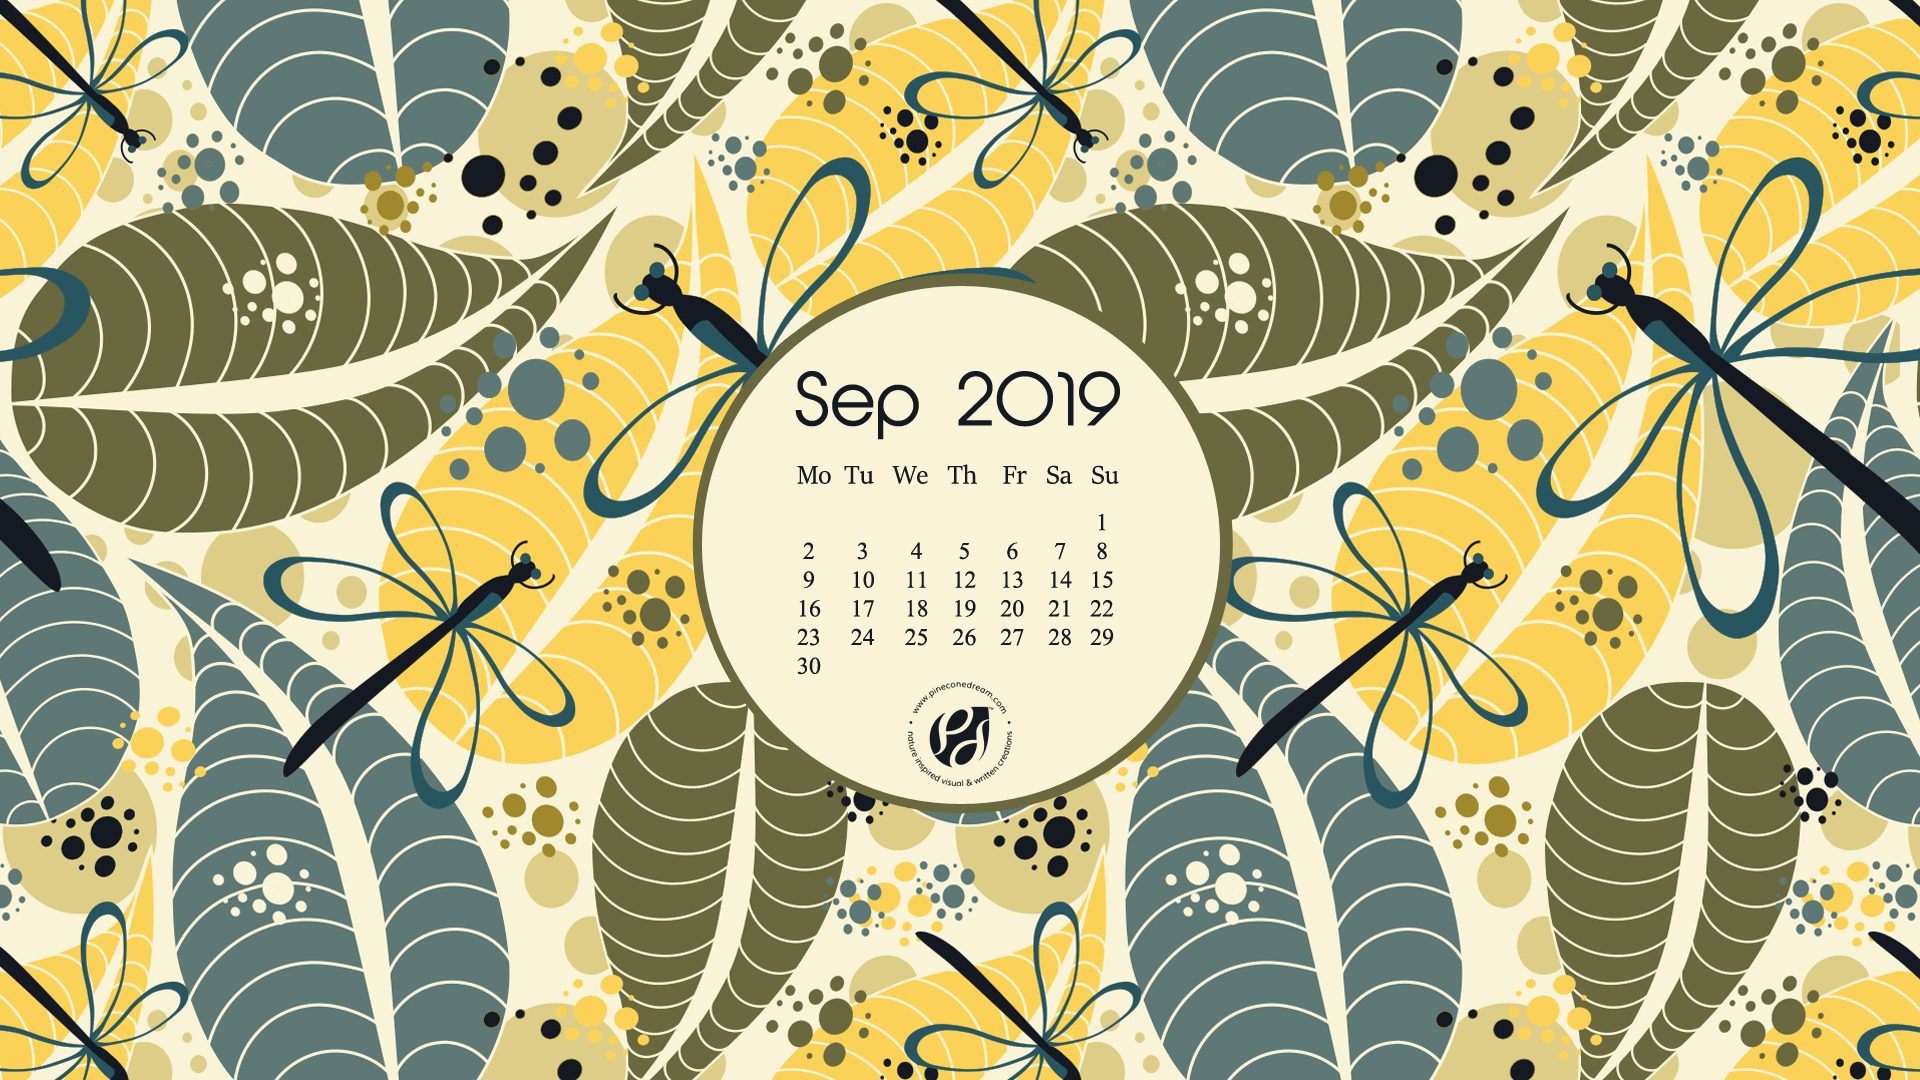 September 2019 free calendar wallpaper & printable planner